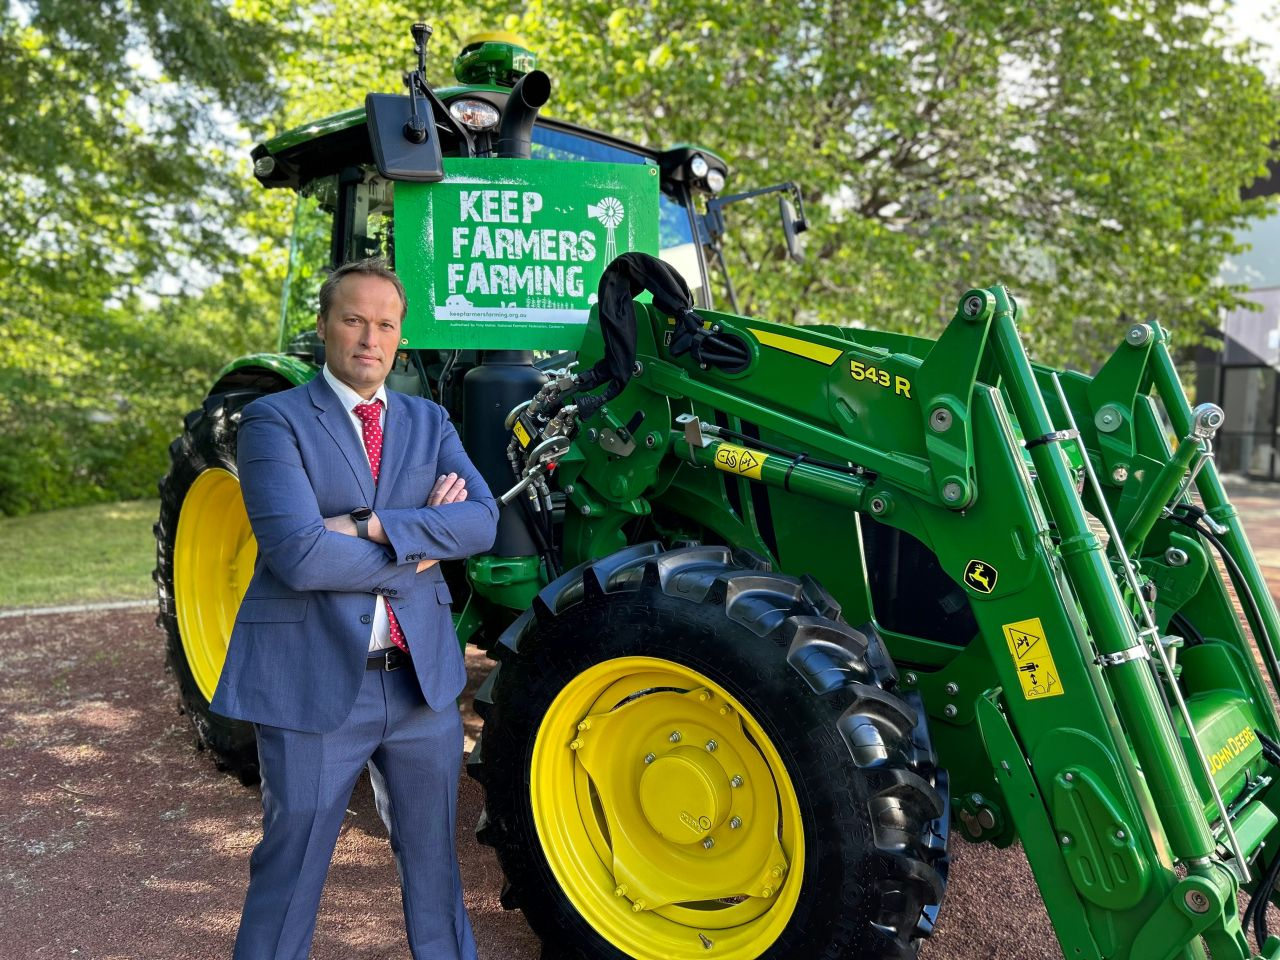 NFF's new president David Jochinke launched the new #keepfarmersfarming campaign.